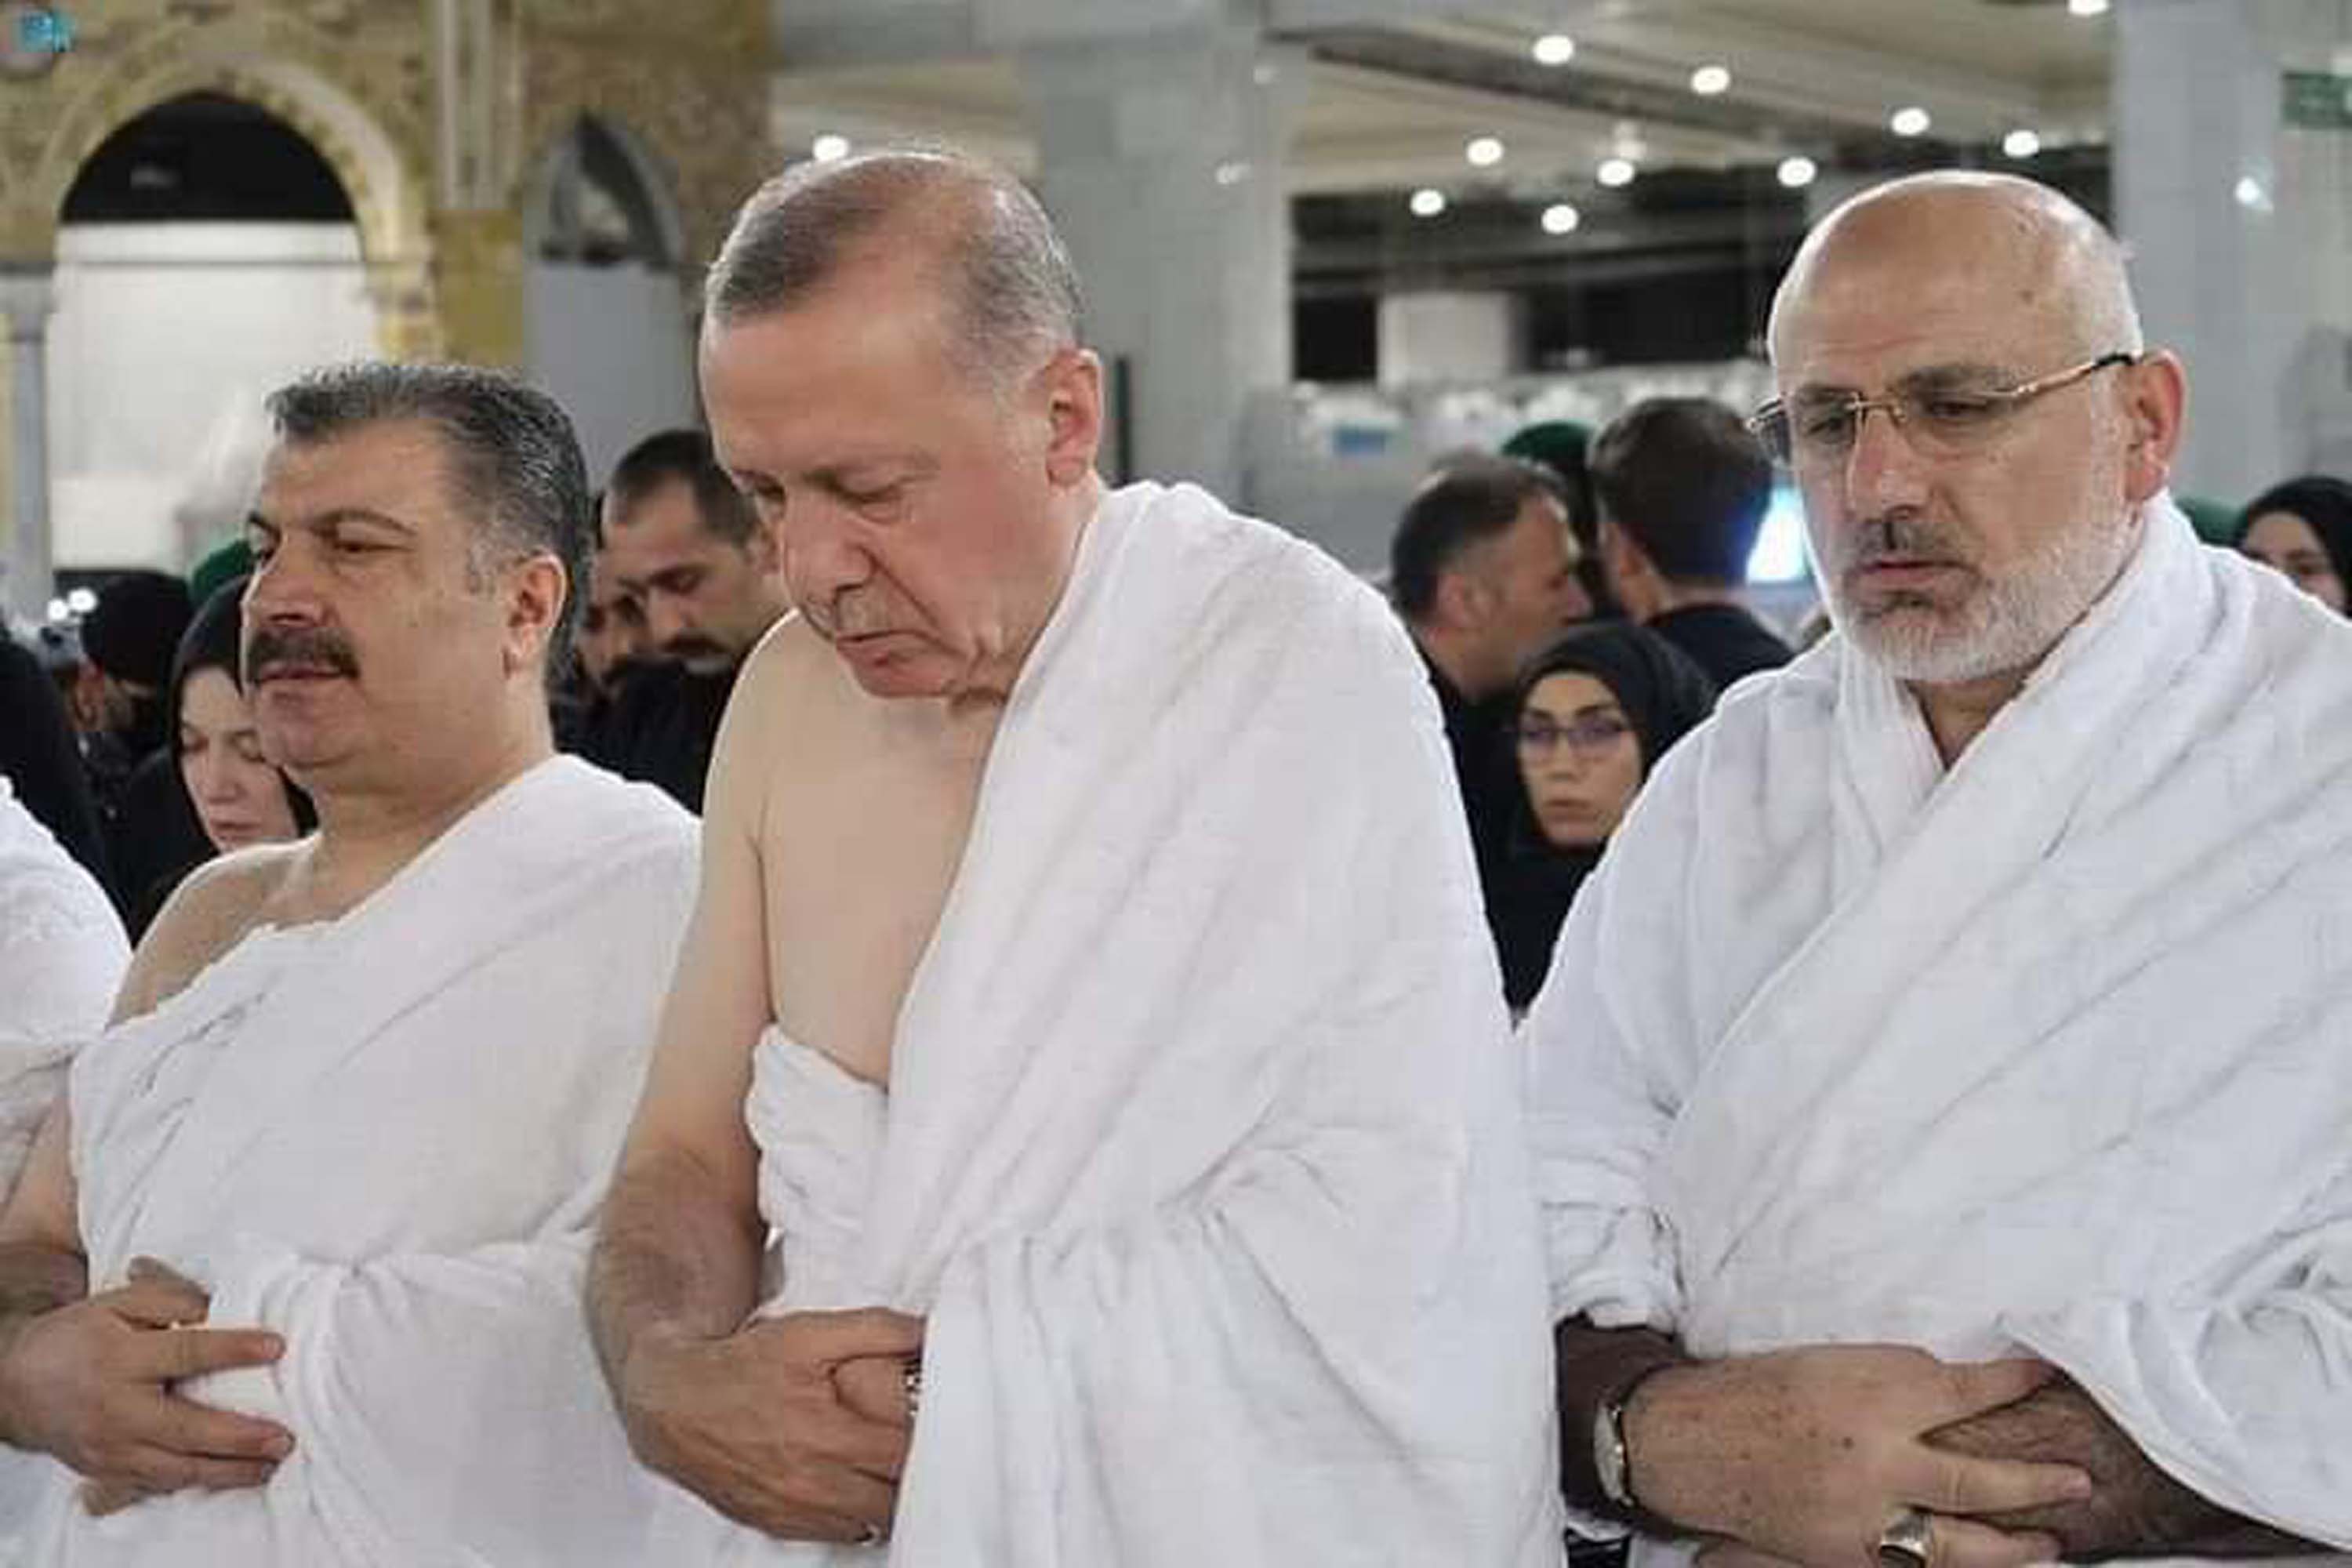 Cumhurbaşkanı Erdoğan, Kabe'de Allah'ın evinin içine girdi! Çıktığında karşılaştığı manzara şaşkına çevirdi!